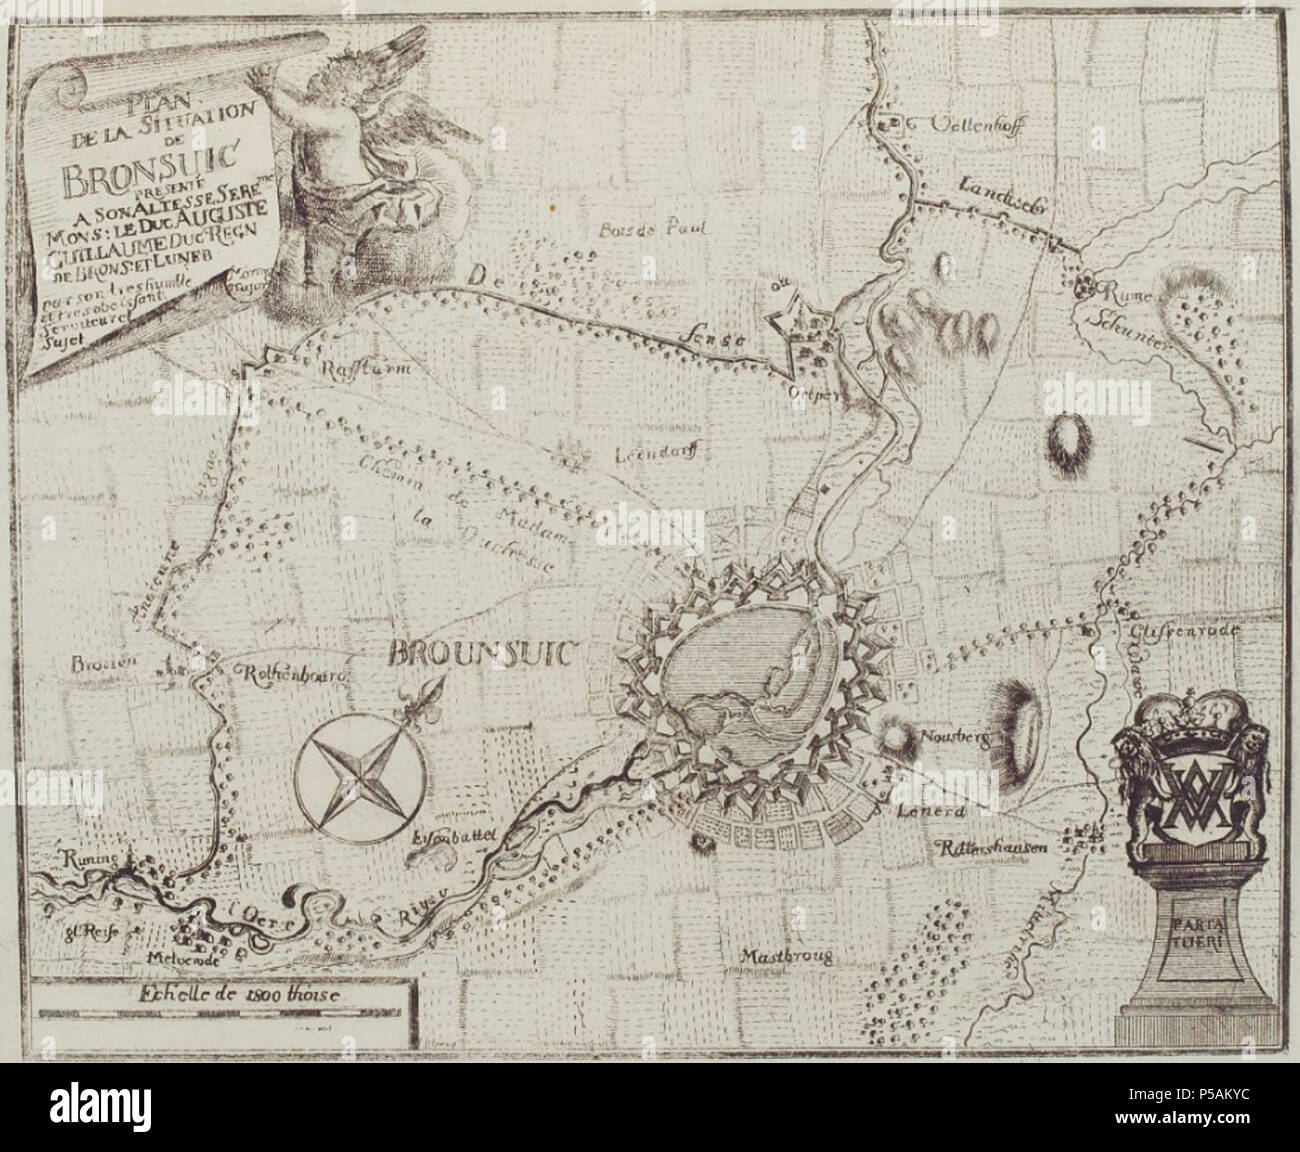 N/A. English: Stadtplan Braunschweig, 1714-1750. Englisch: Stadtplan von Braunschweig, Deutschland, 1714-1750. zwischen 1714 und 1750. Unbekannt 233 Braunschweig Map 1714-1750 Stockfoto